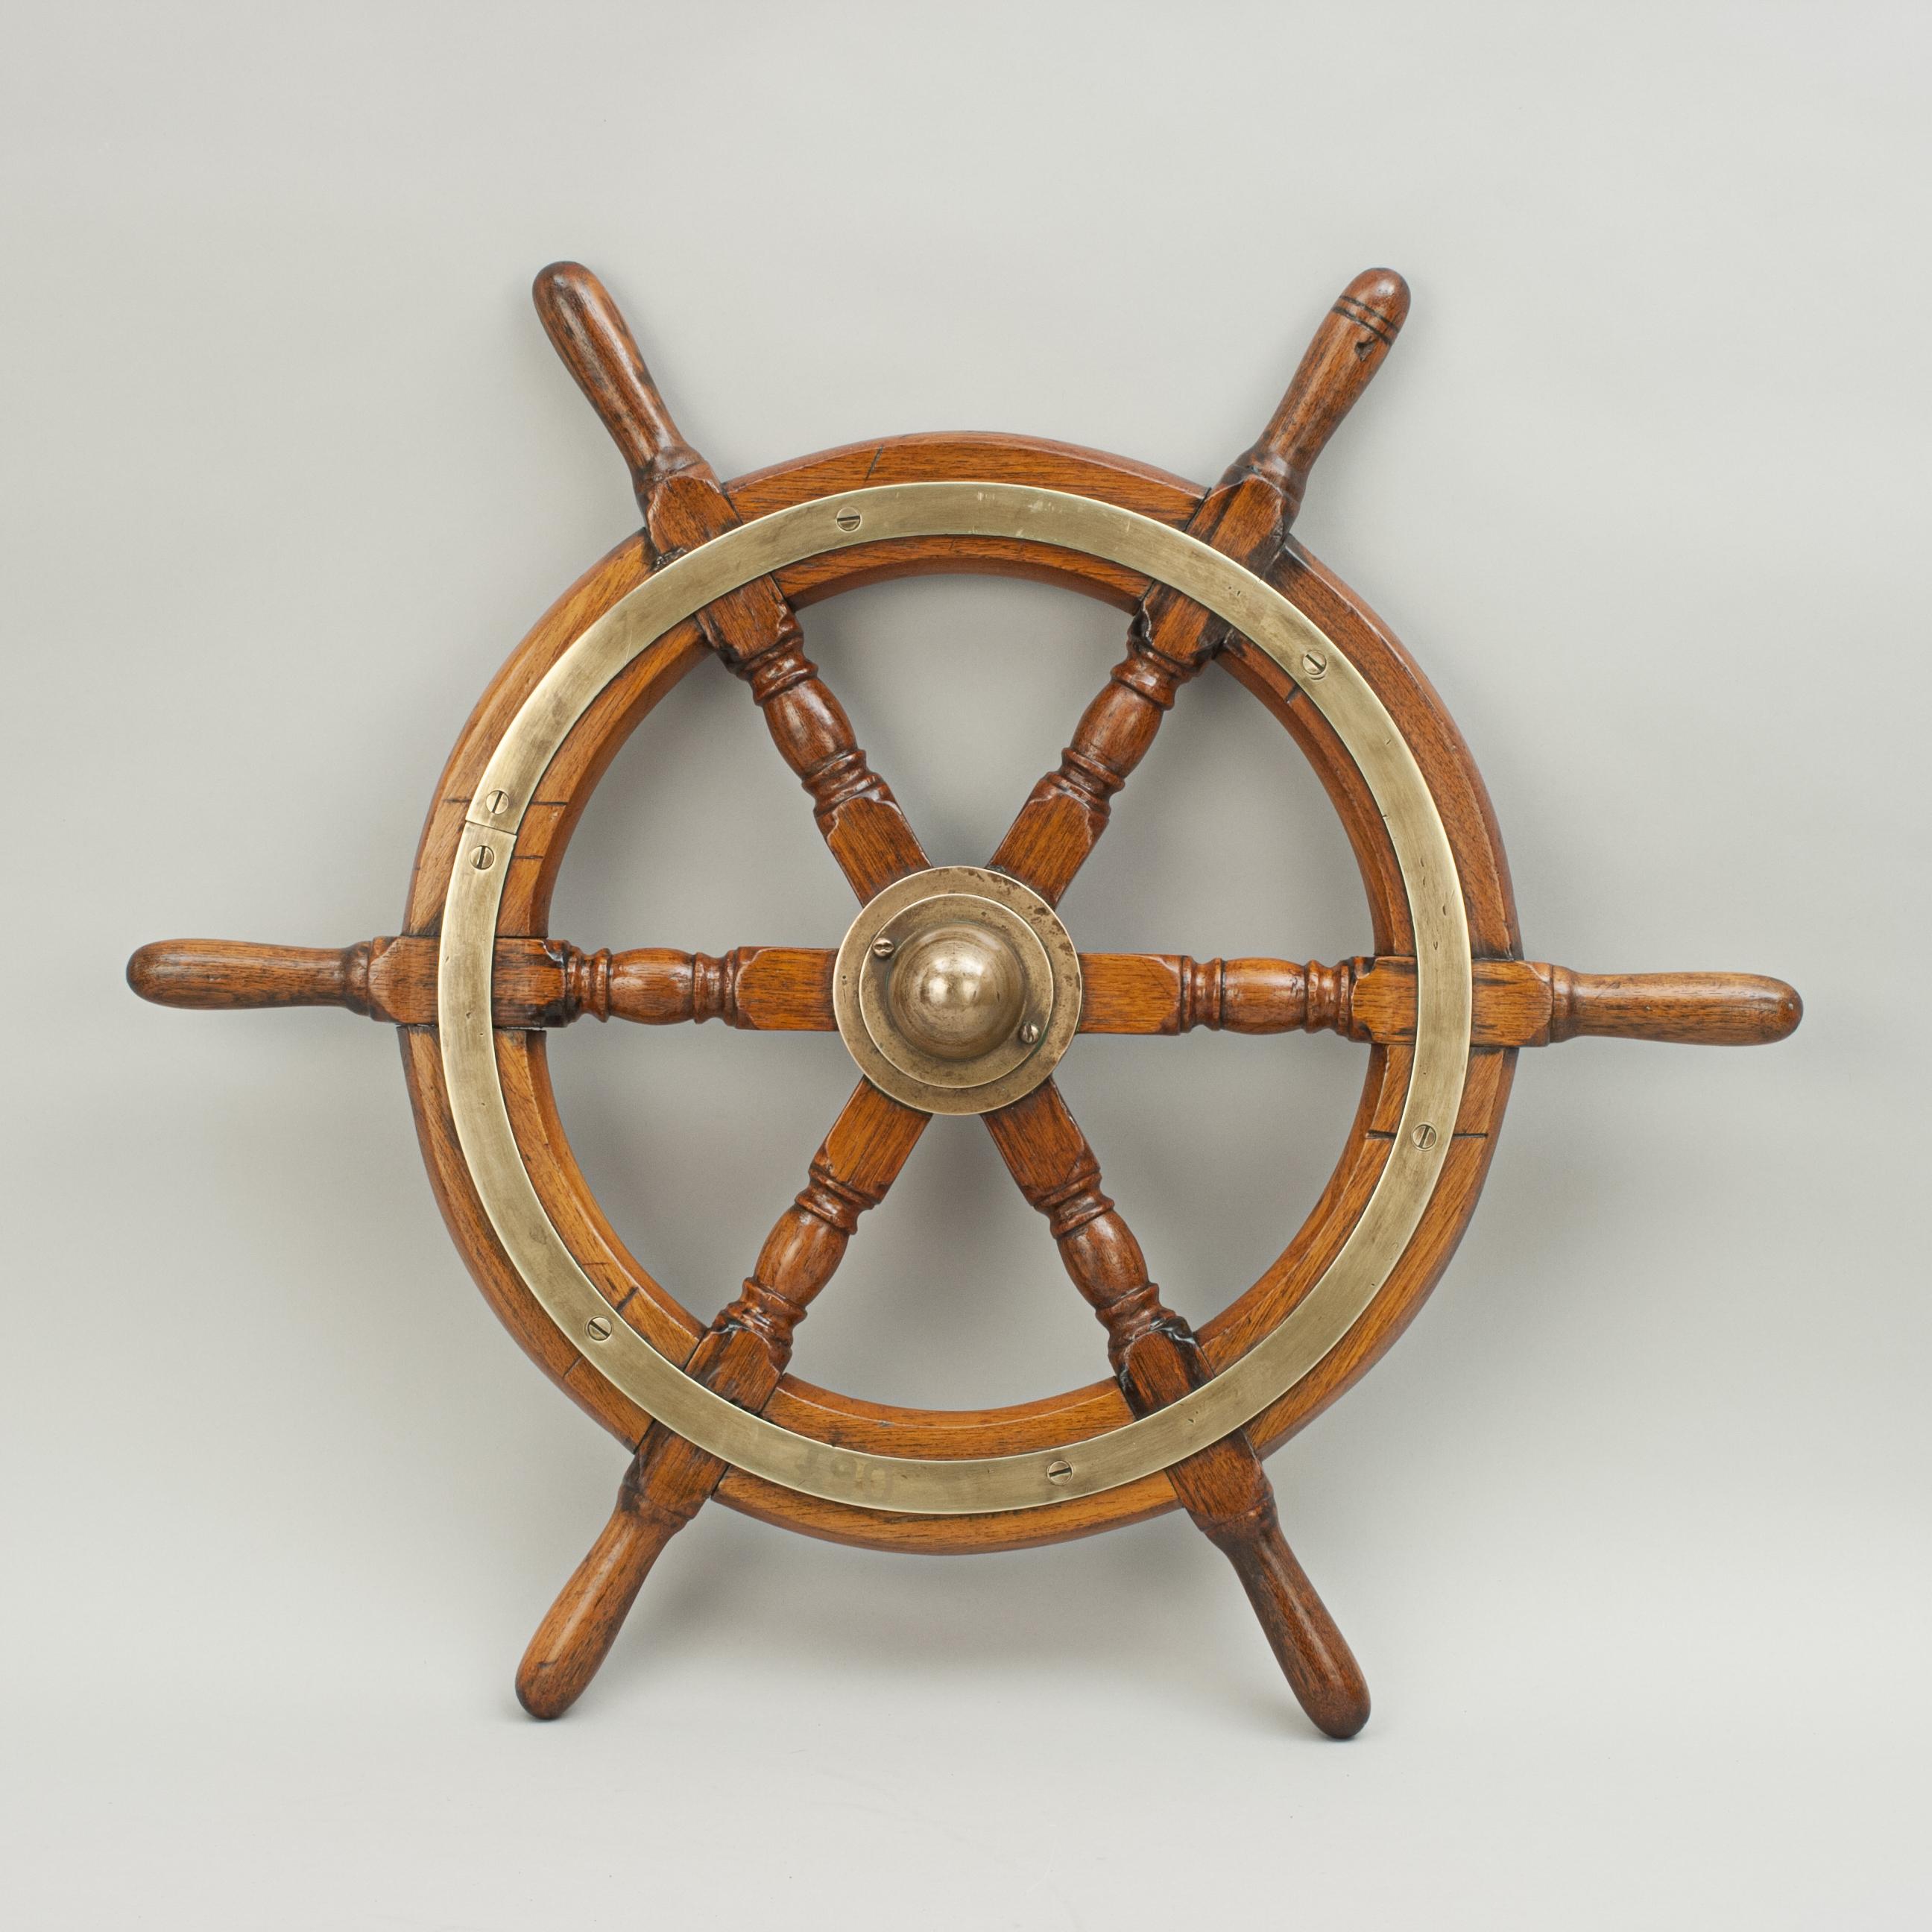 Vintage Teak Ships Wheel, 6 Spoke Helm Wheel, Teak and Brass 4